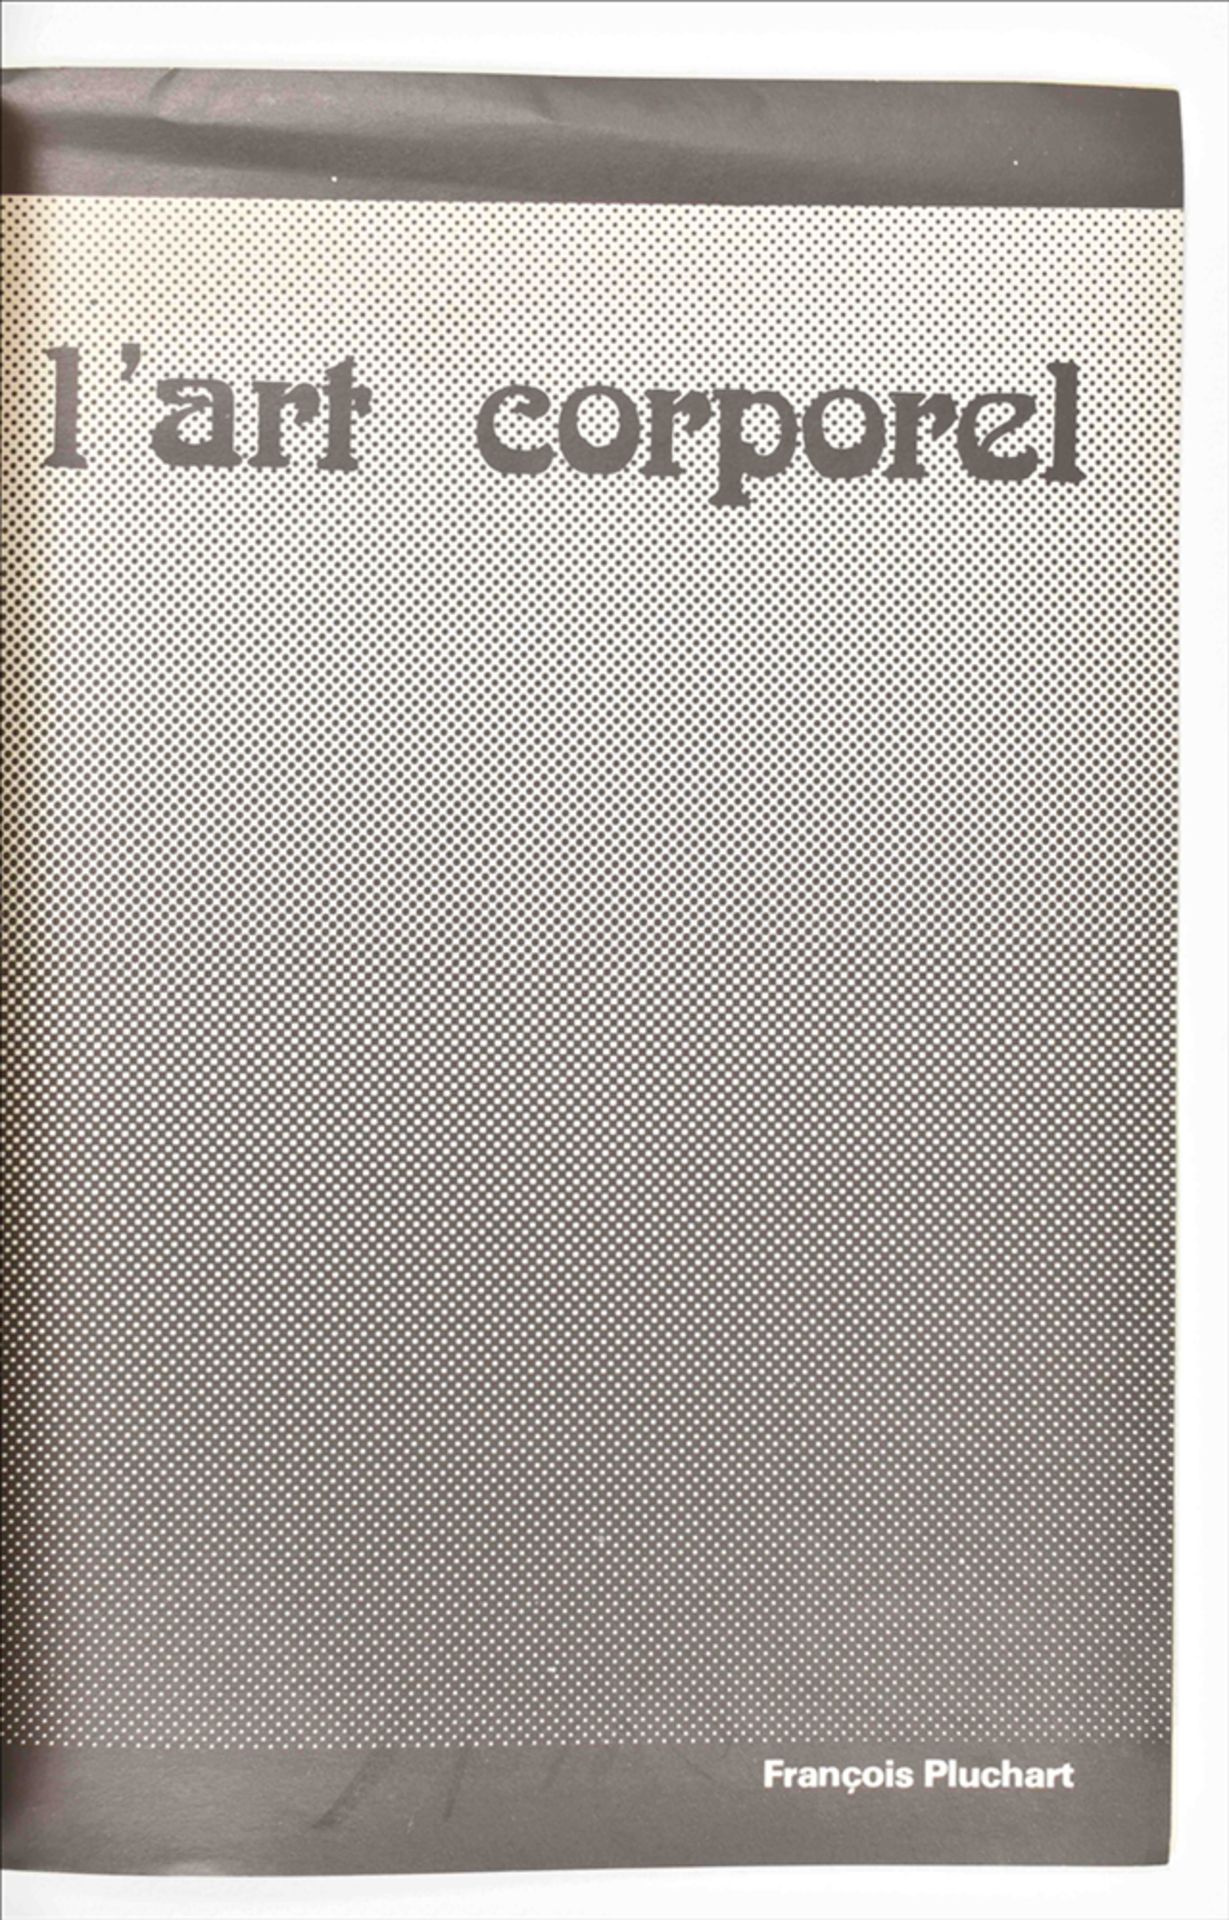 Il Corpo/Body Art and L'Art Corporel - Image 4 of 8